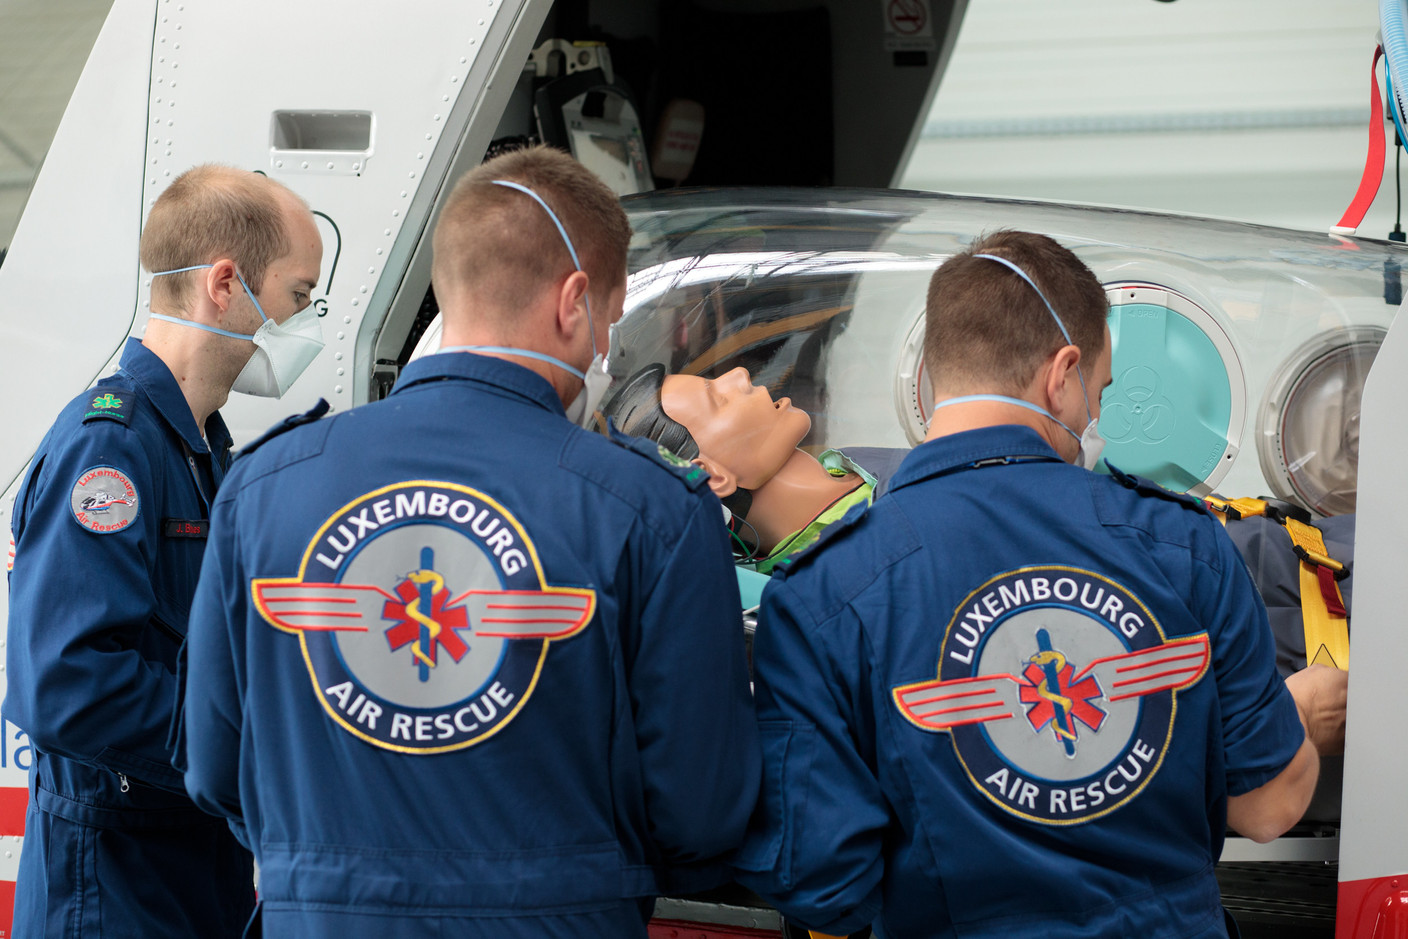 Le personnel de Luxembourg Air Rescue peut transporter des malades hautement infectieux en toute sécurité. (Photo: Matic Zorman / Maison Moderne)